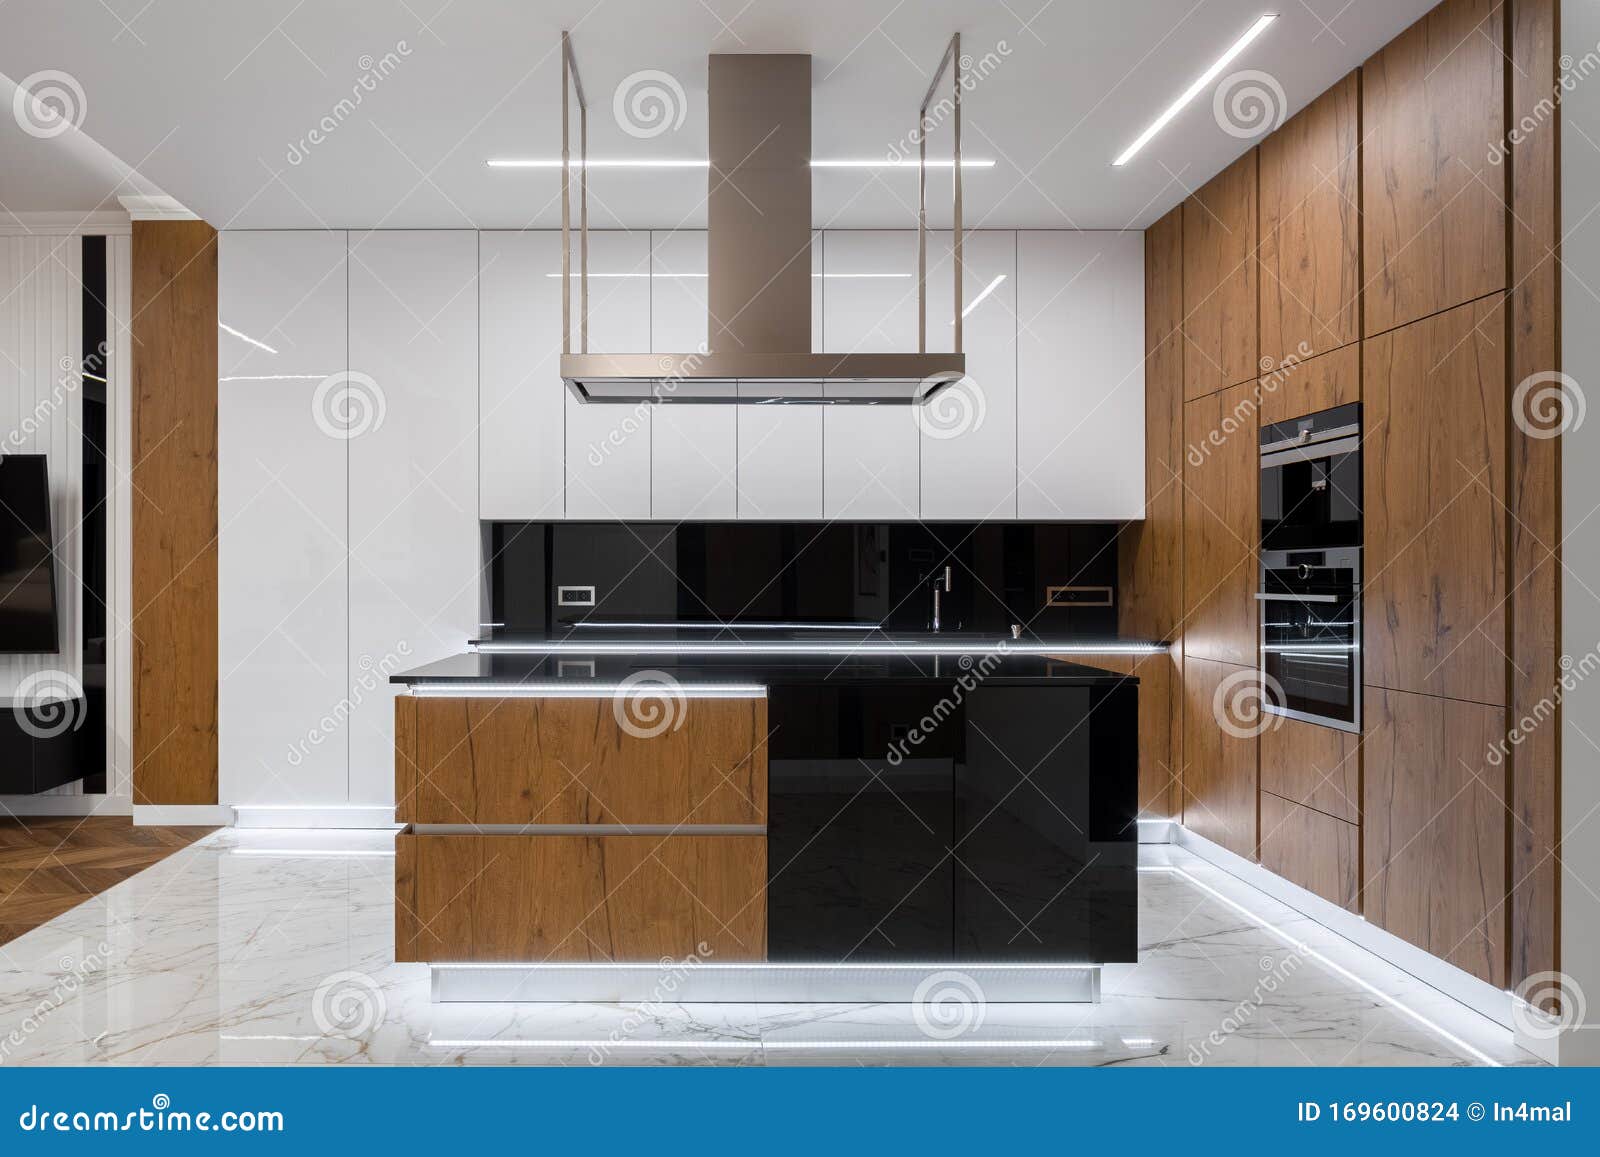 Elegant Kitchen With Led Lighting Stock Photo Image Of Living